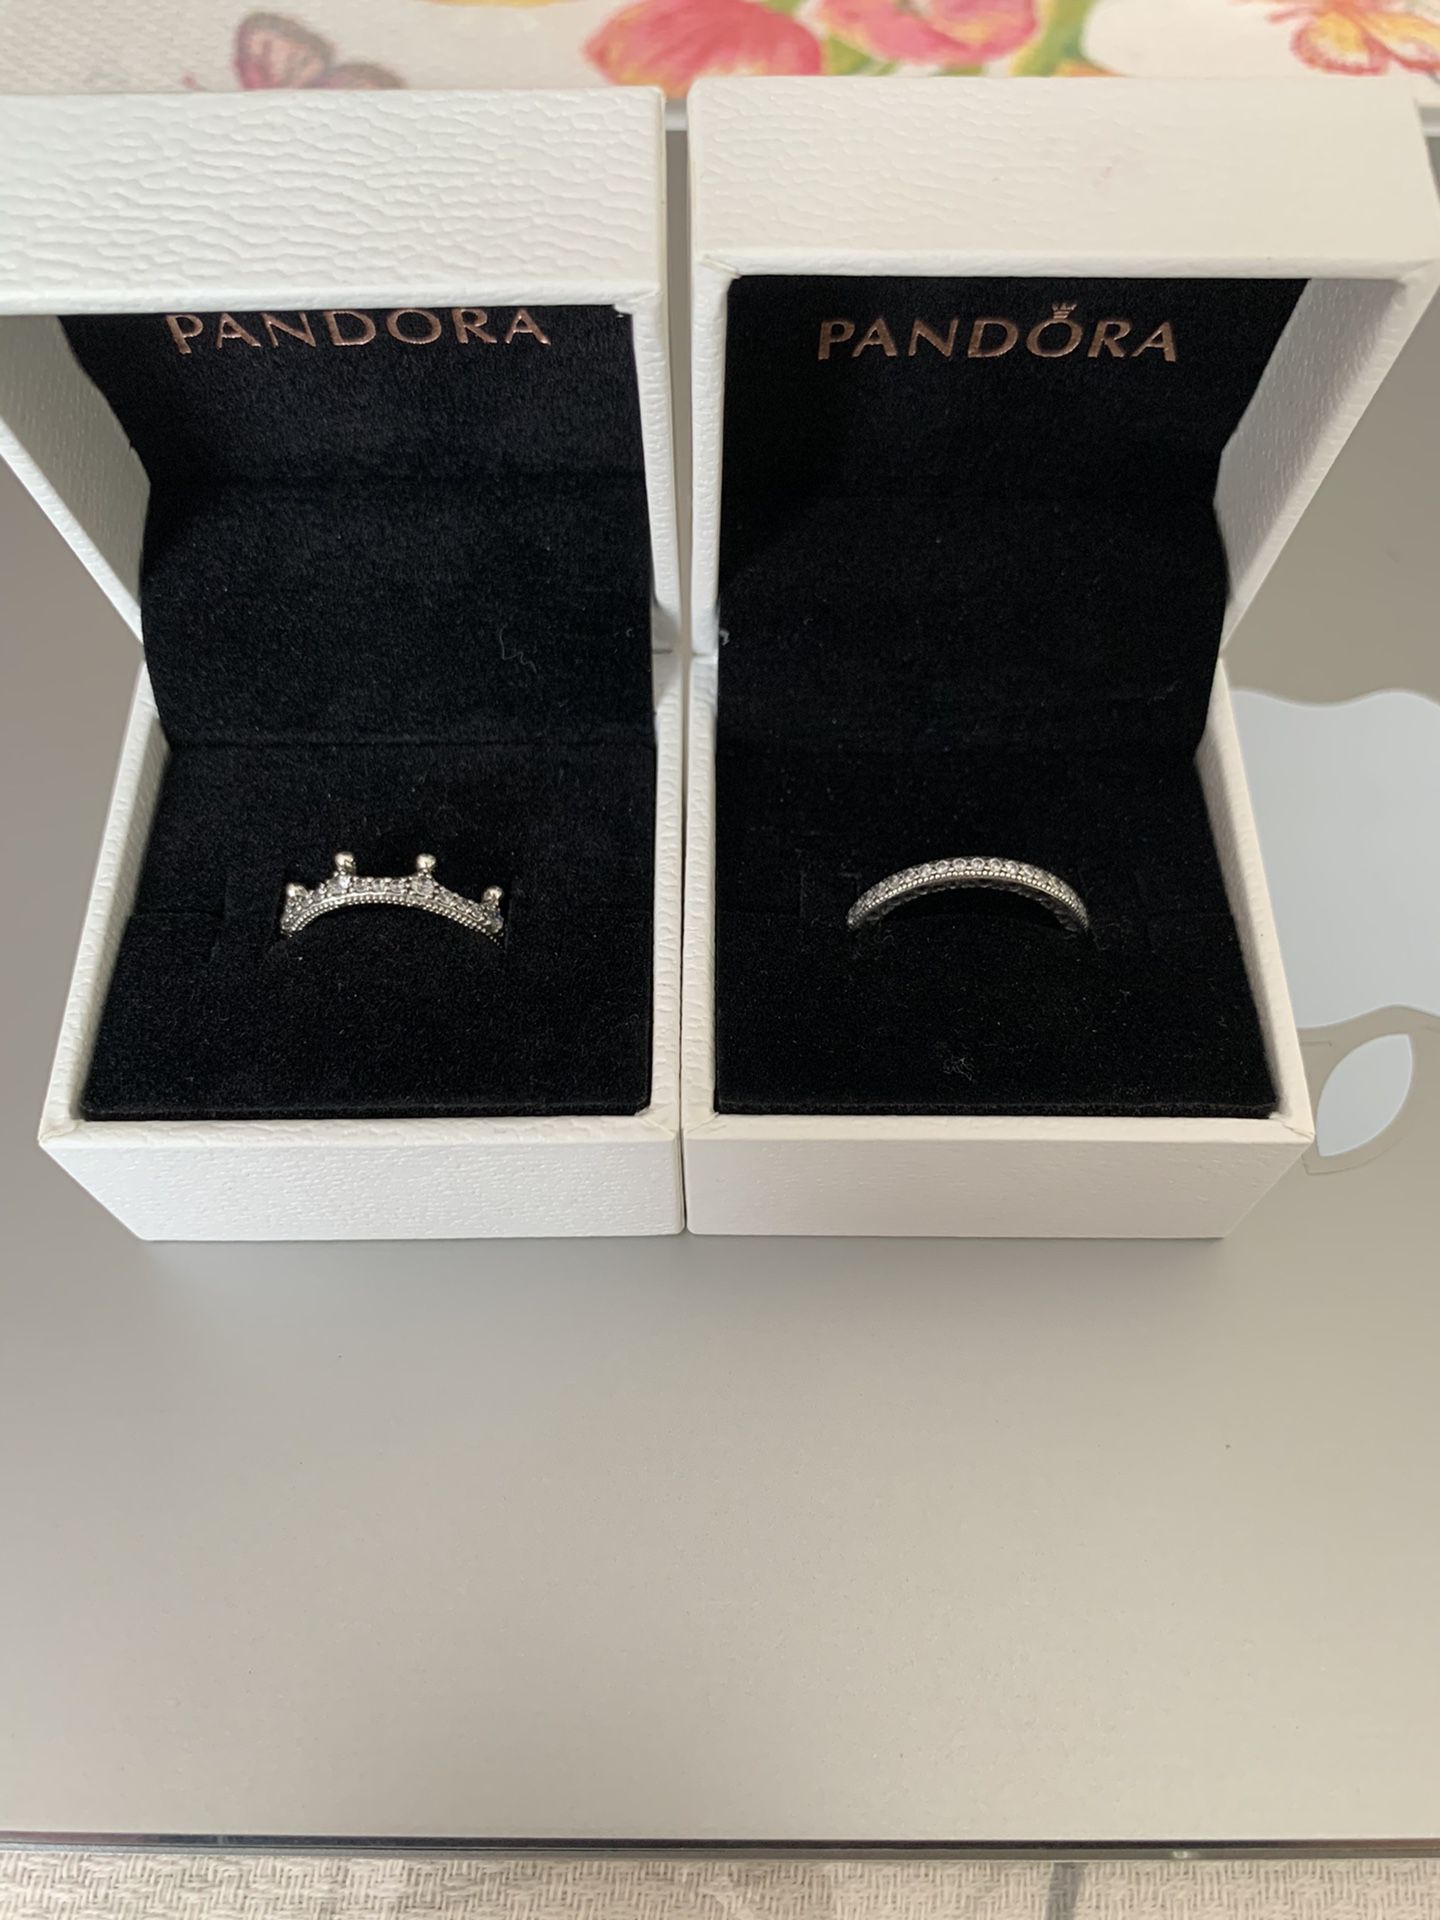 Pandora rings